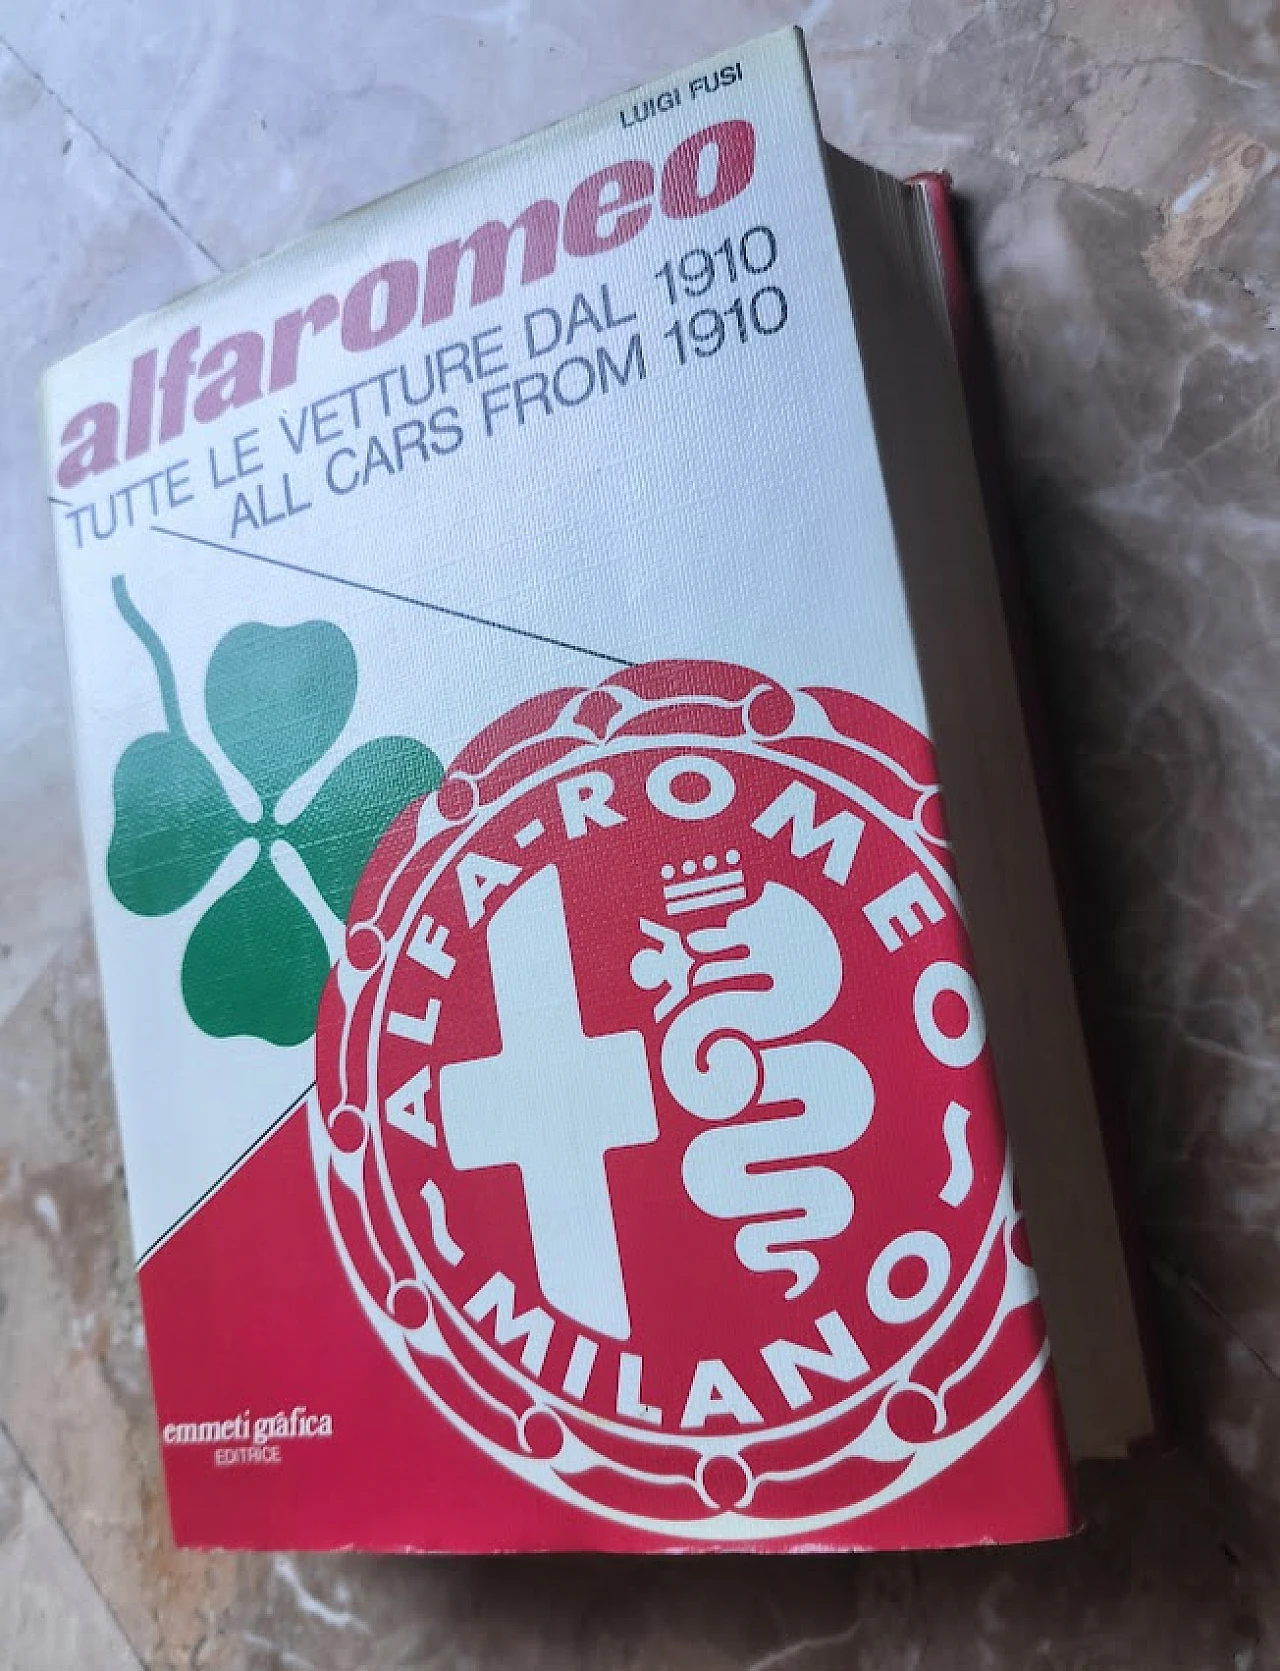 Alfaromeo - Tutte le vetture dal 1910 book by Luigi Fusi, 1978 5